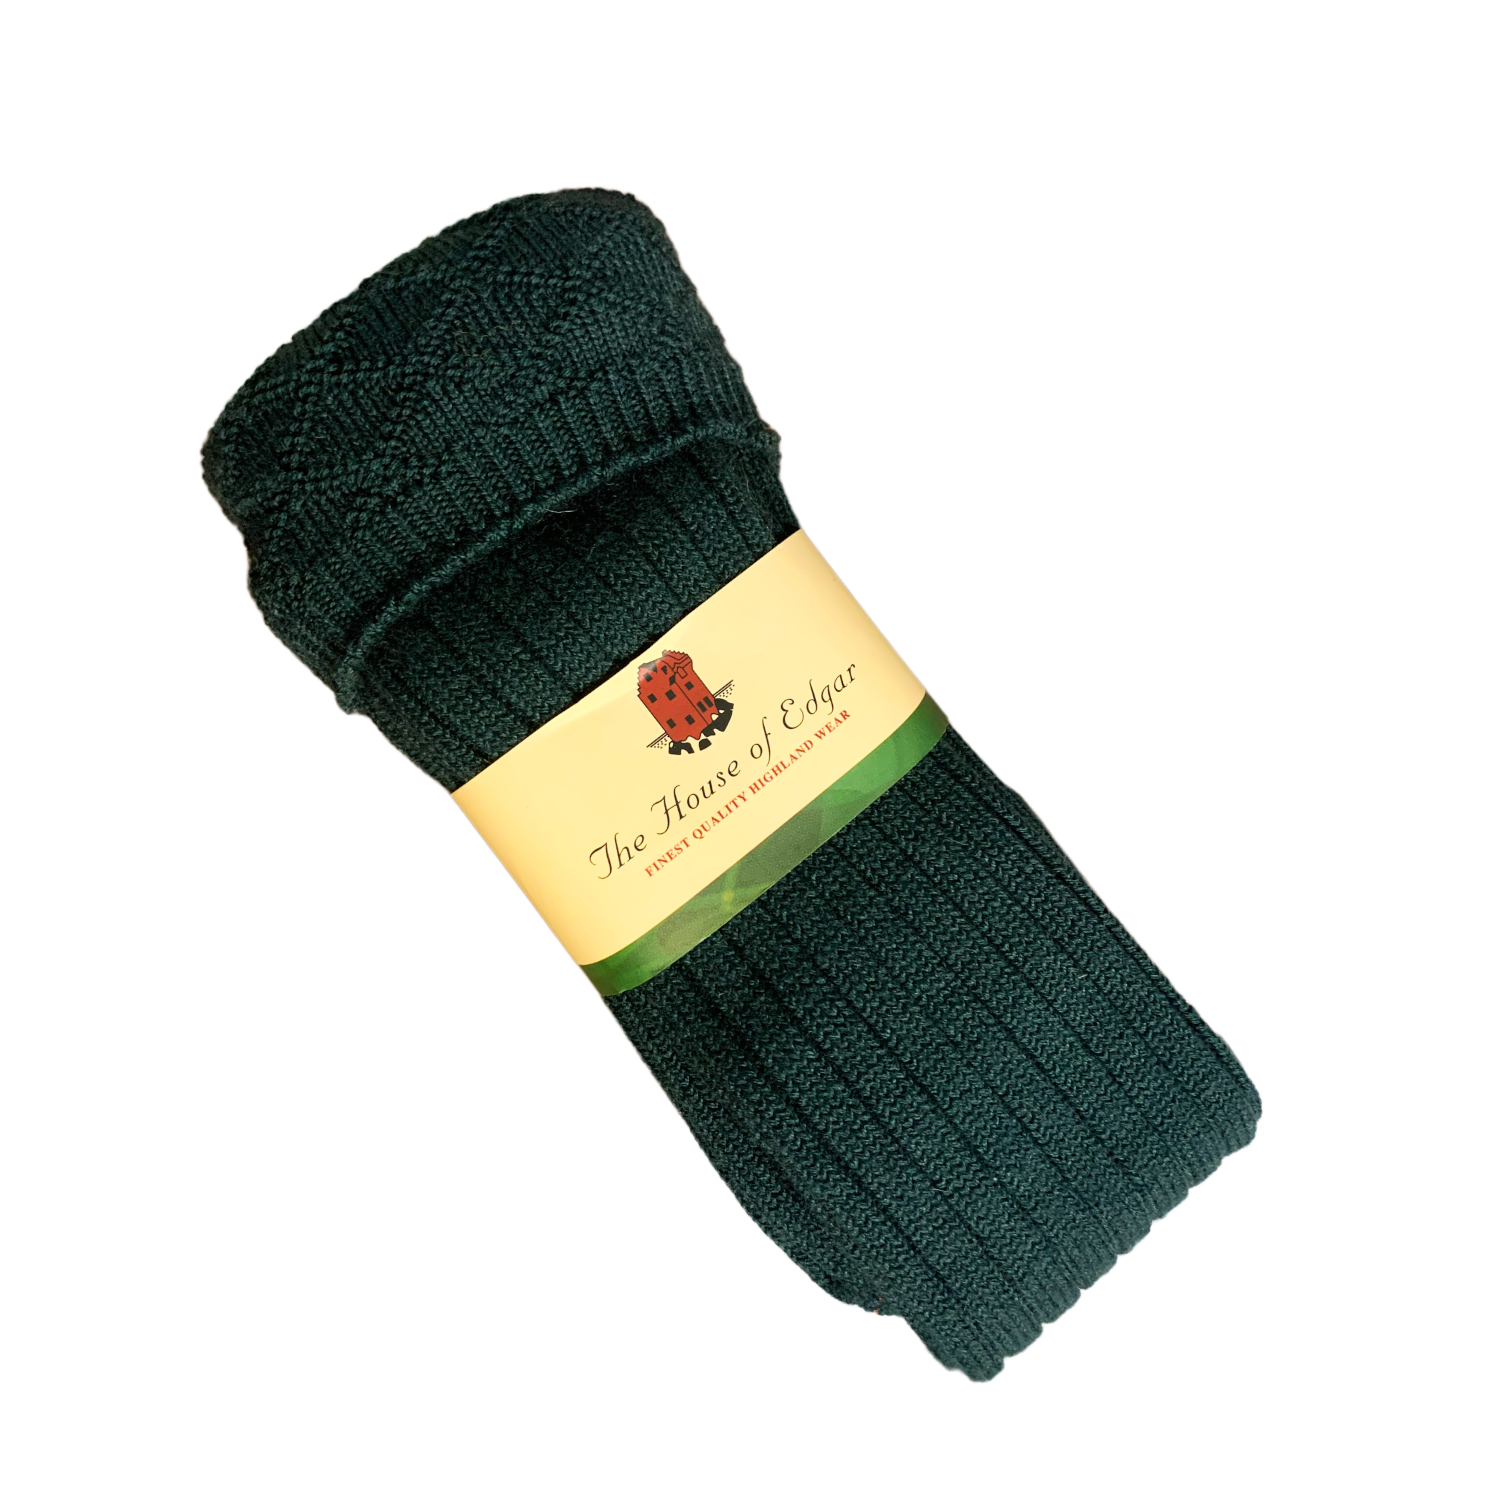 Pentland Kilt Hose (socks)